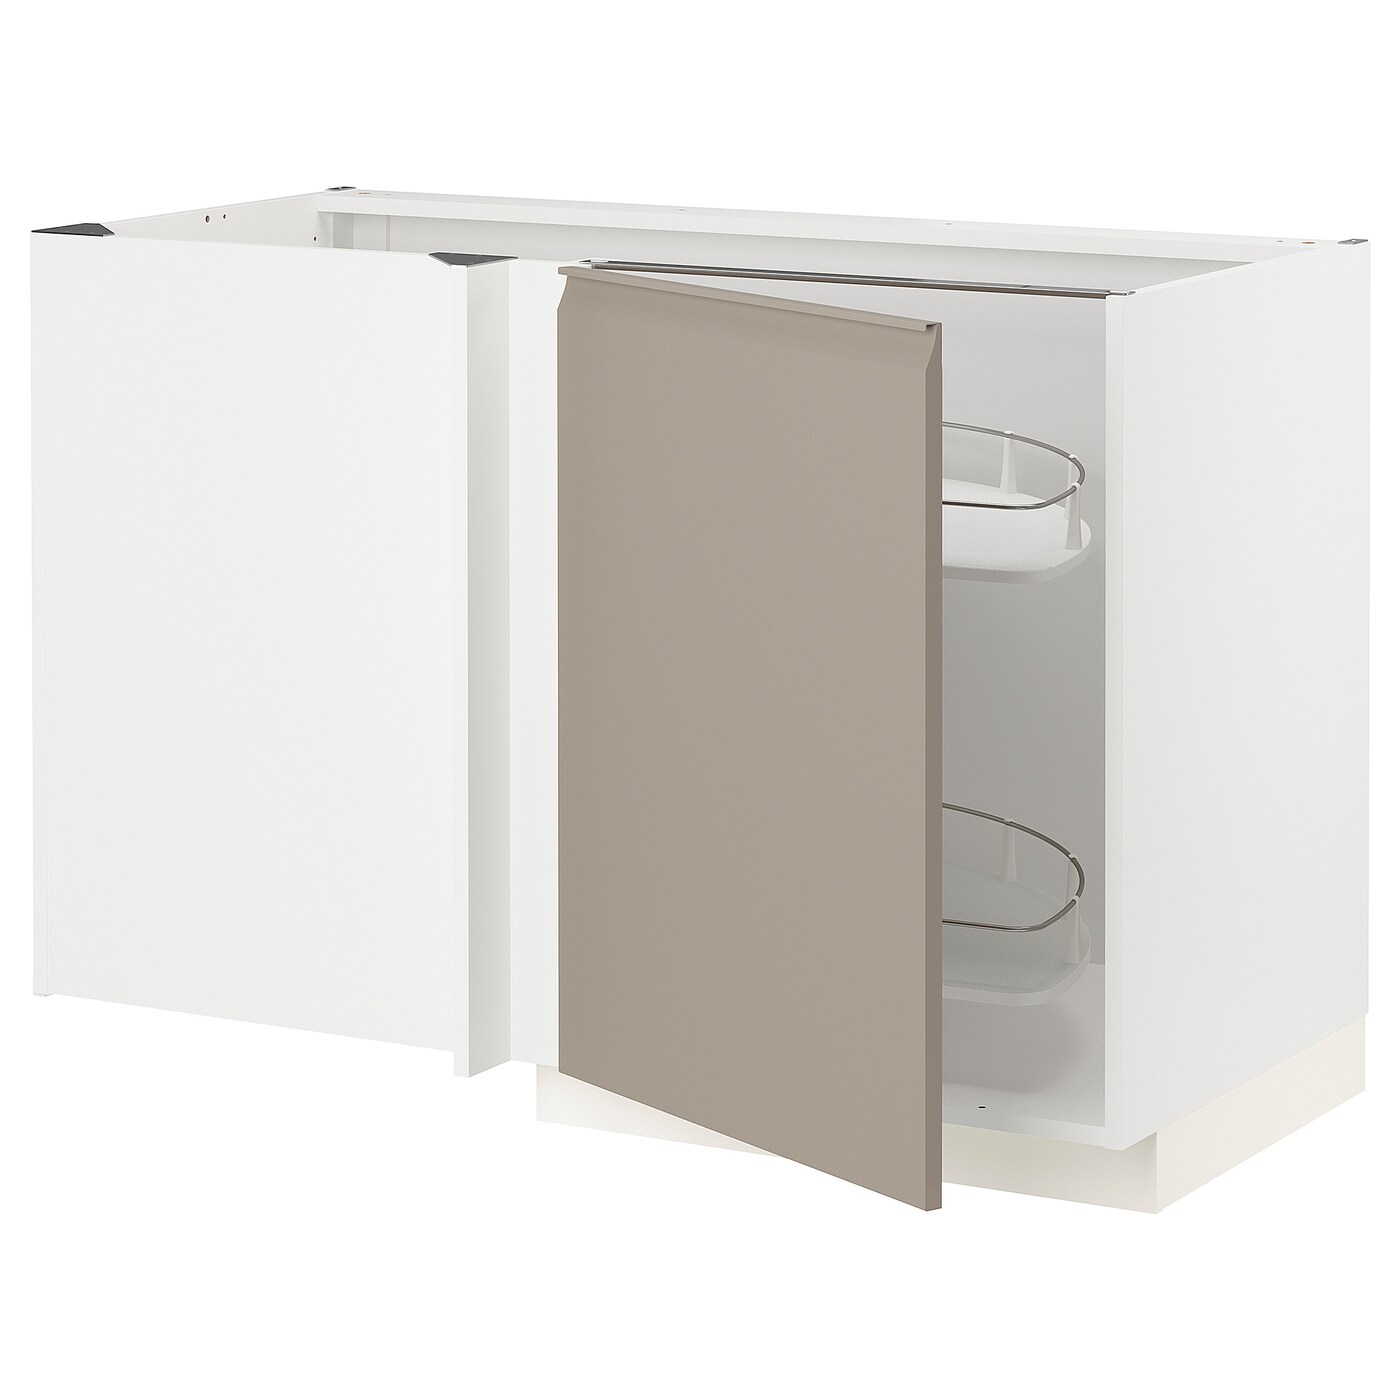 Напольный шкаф - IKEA METOD, 88x67,5x127,5см, белый/темно-бежевый, МЕТОД ИКЕА